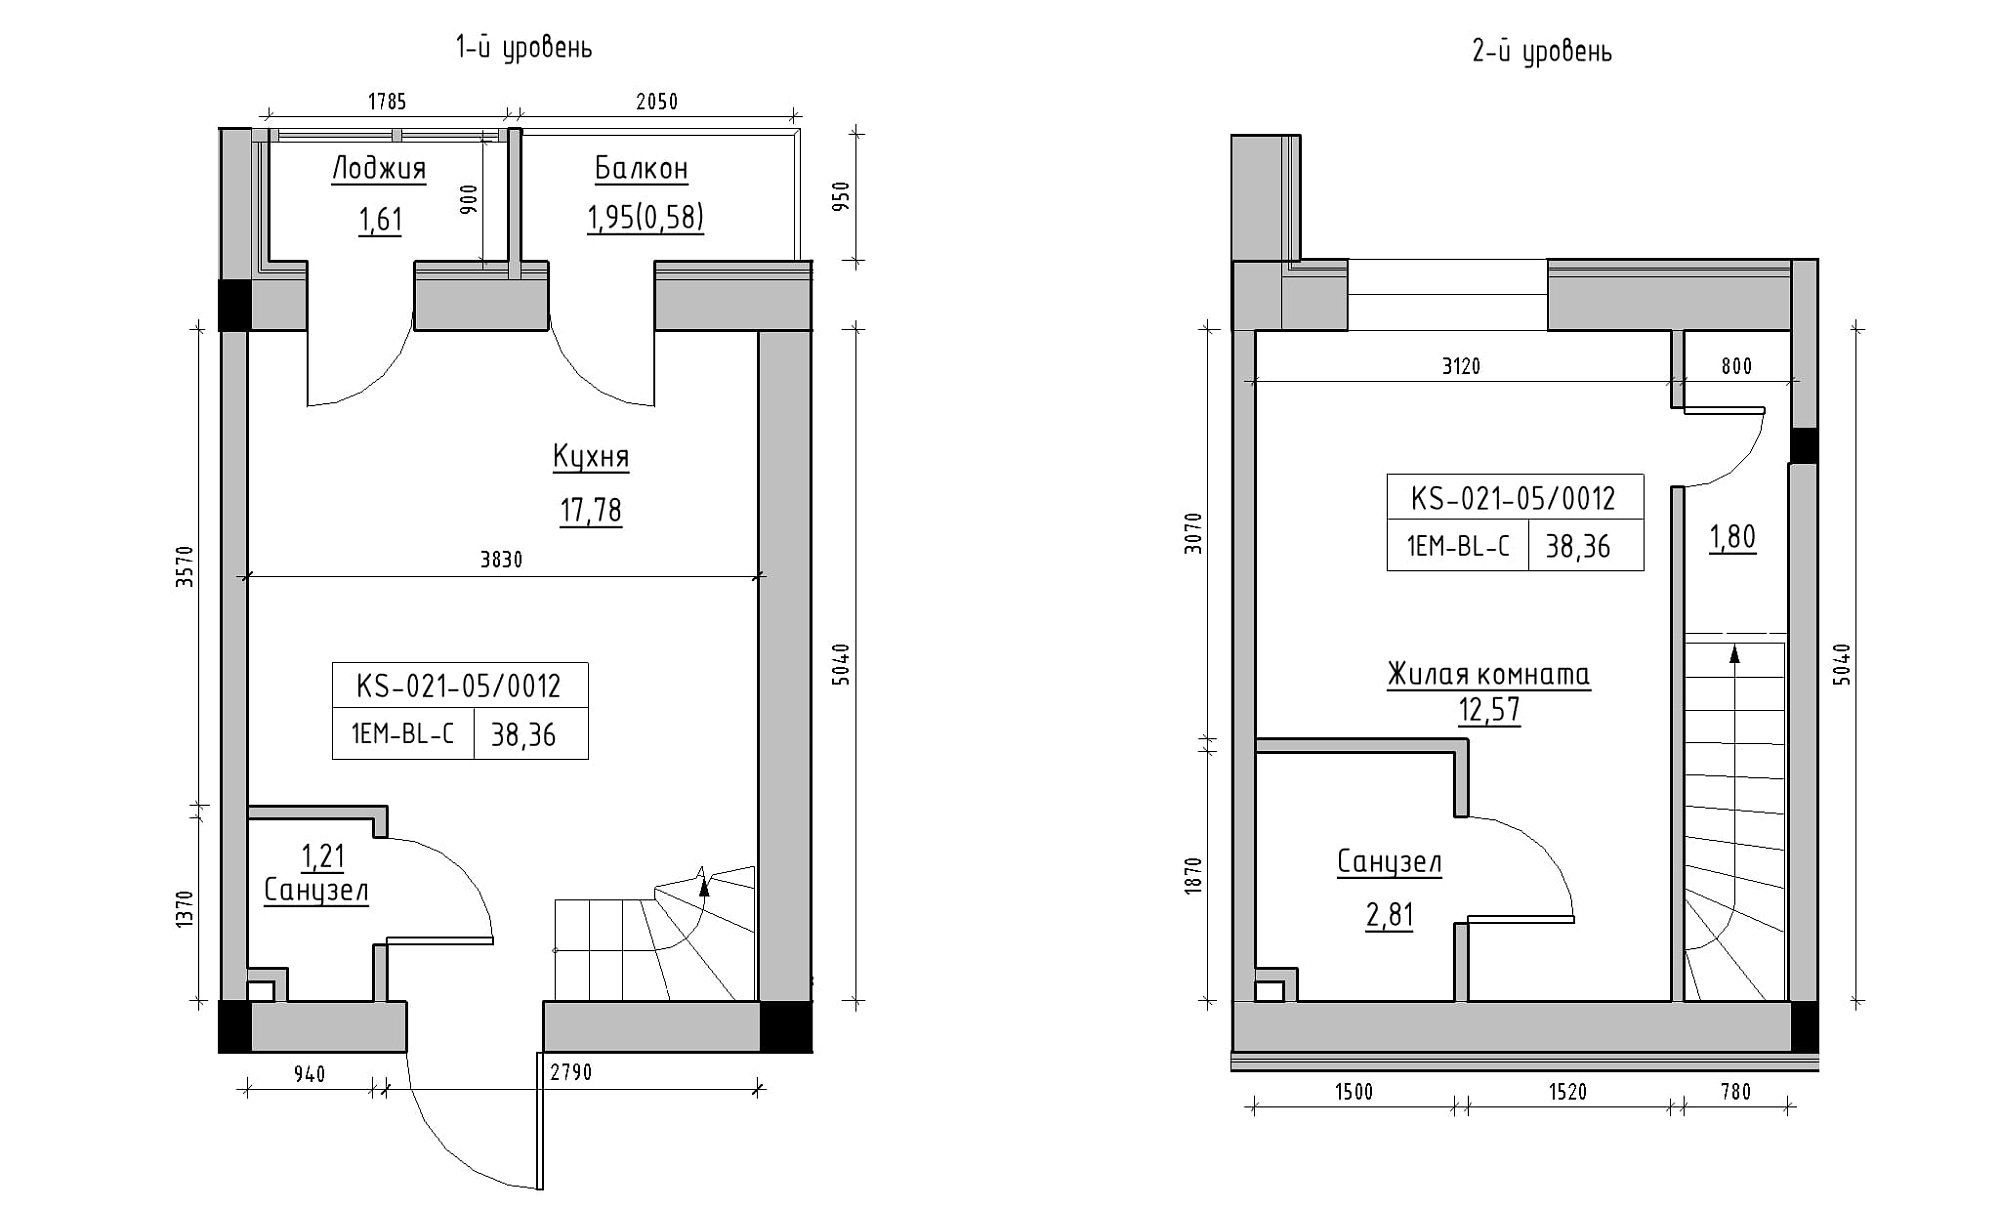 Planning 2-lvl flats area 38.36m2, KS-021-05/0012.